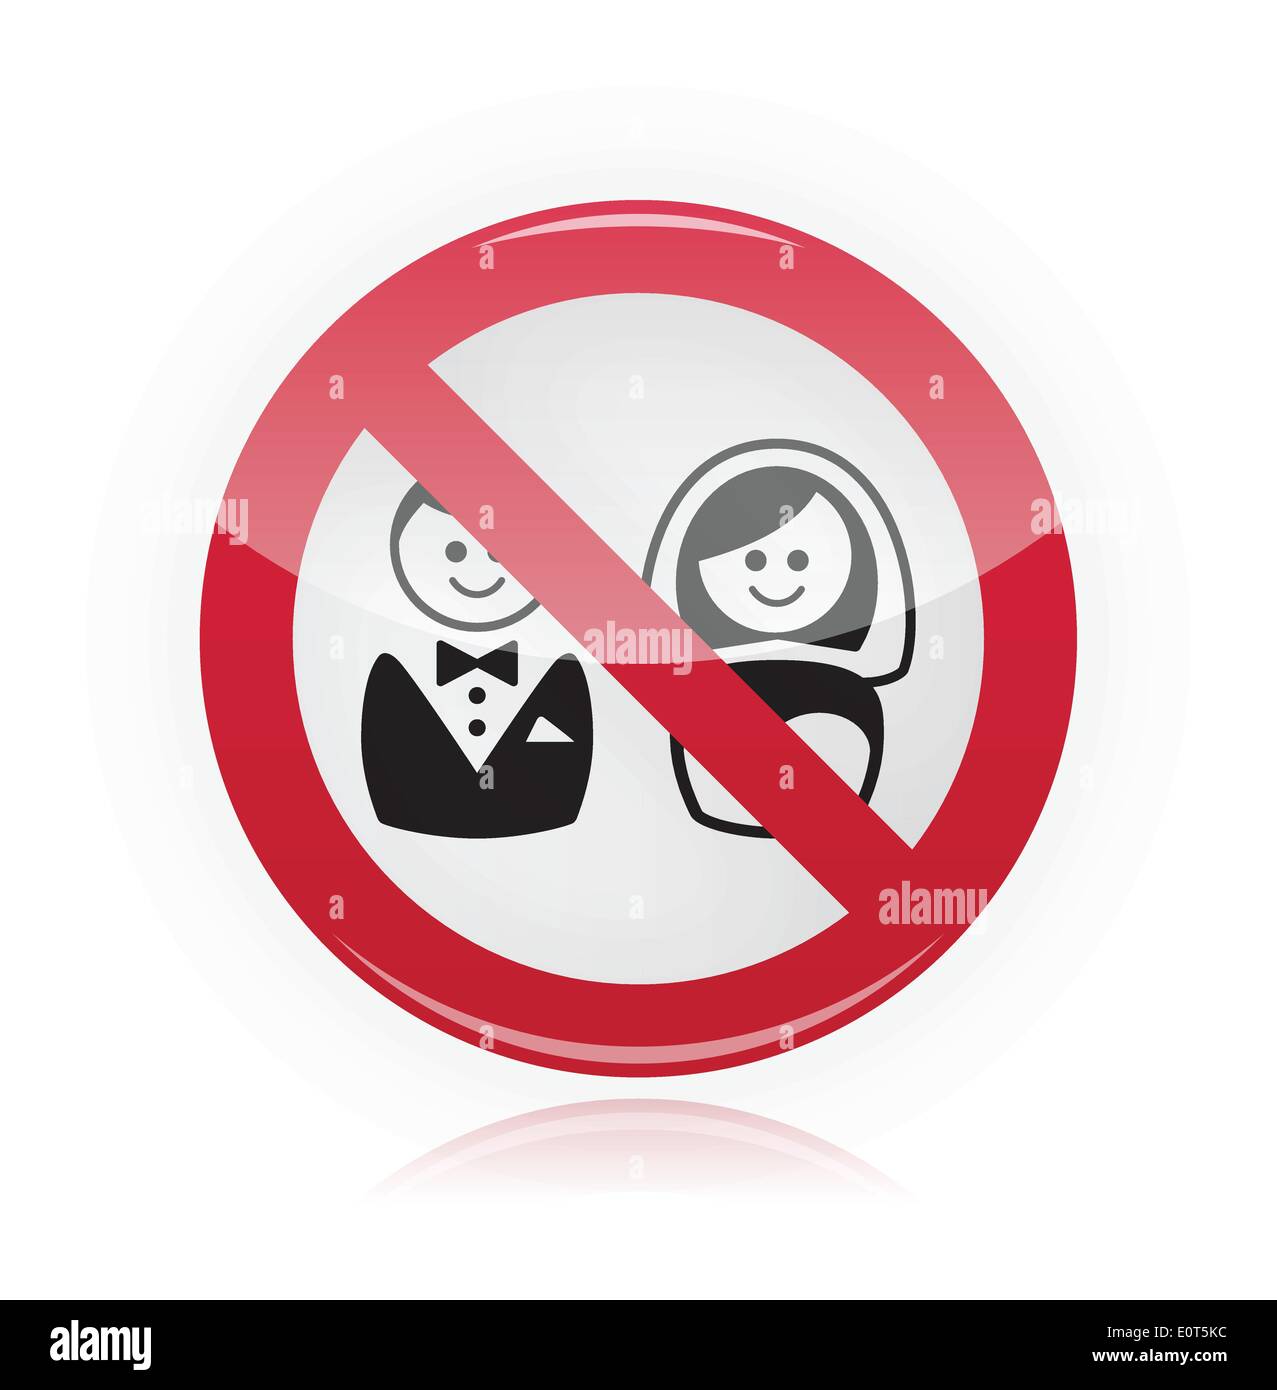 Запрет на брак 12. Запрет на брак. Свадьба запрещена. Знак запрета на женитьбу. Зачеркнутая любовь.